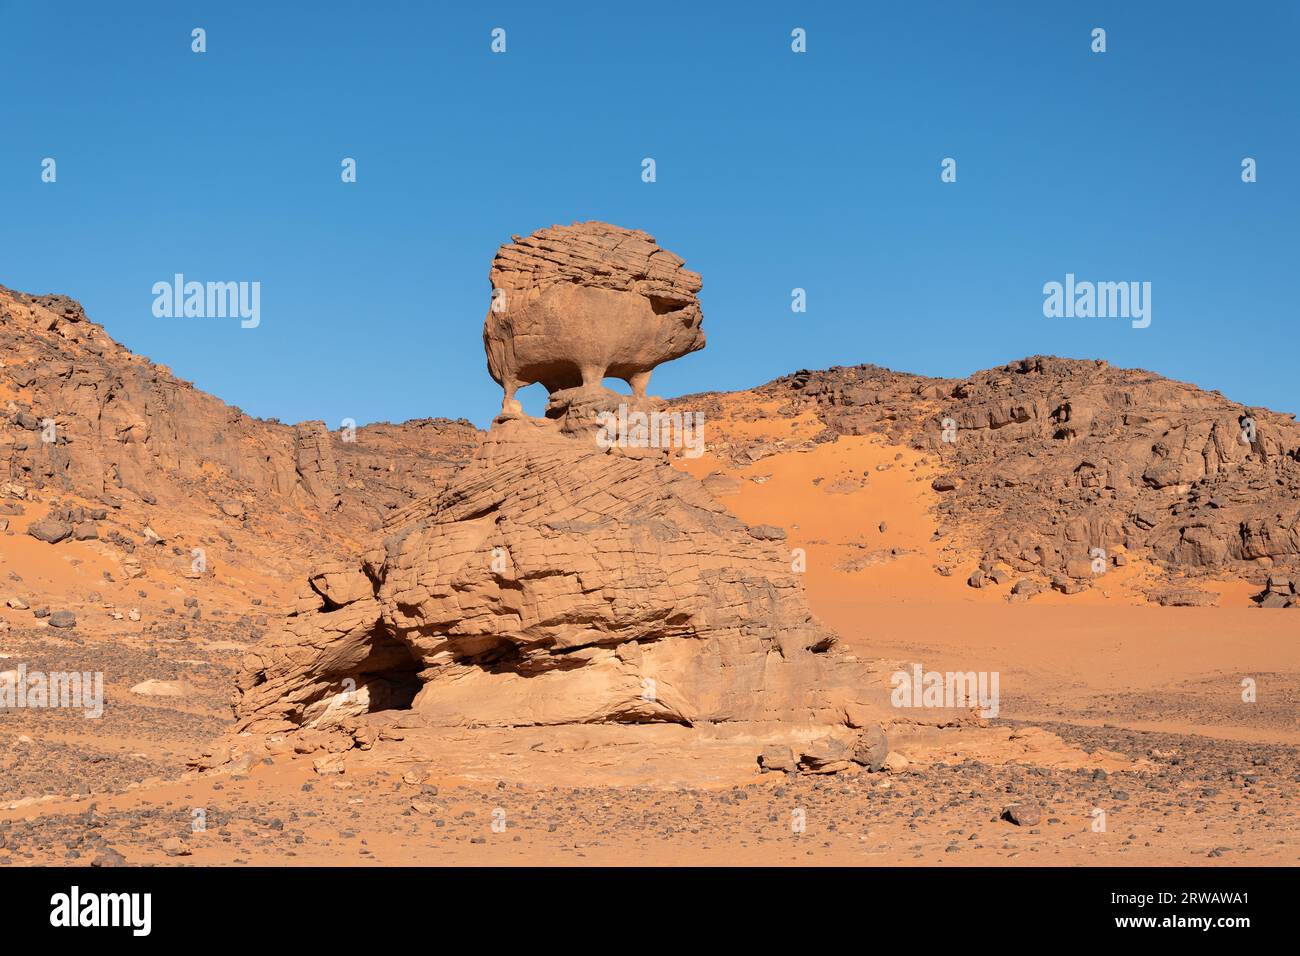 Sahara desert landscape Stock Photo